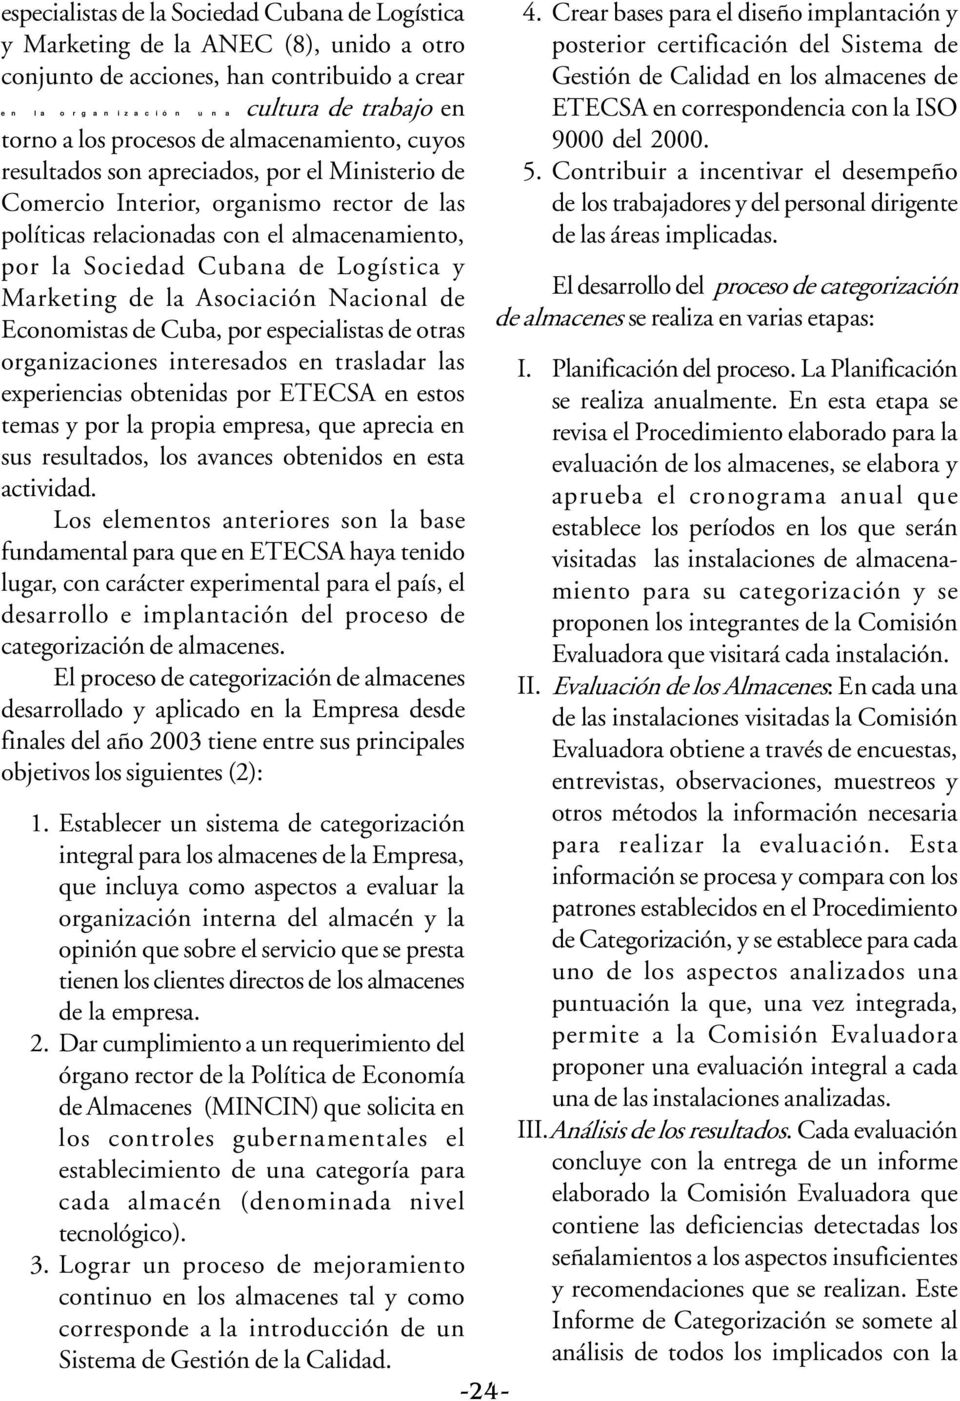 Cubana de Logística y Marketing de la Asociación Nacional de Economistas de Cuba, por especialistas de otras organizaciones interesados en trasladar las experiencias obtenidas por ETECSA en estos